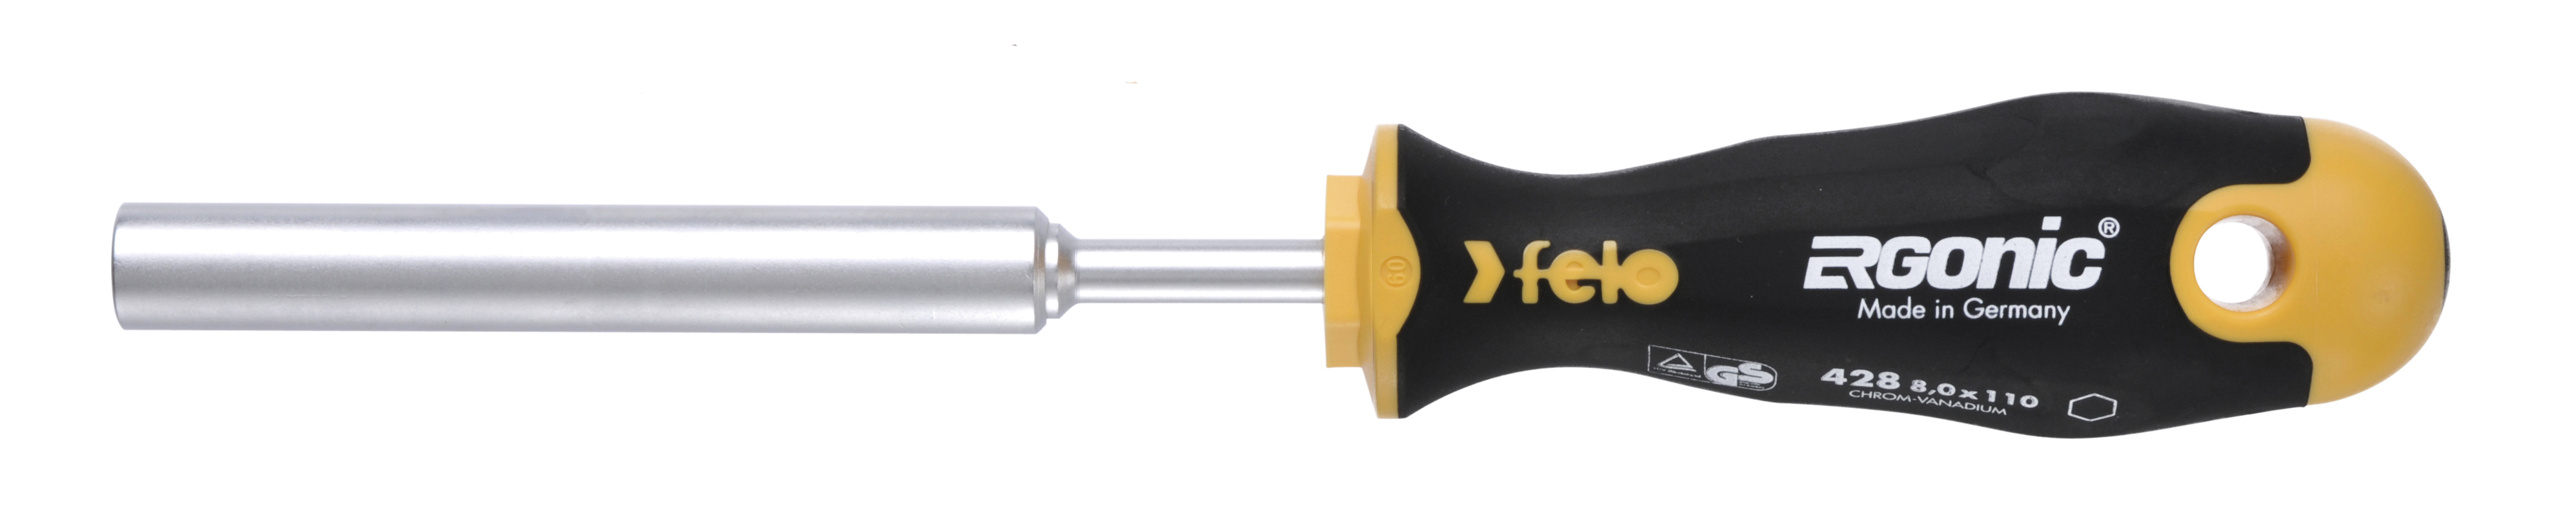 Отвертка Felo Ergonic M-TEC 42808030 торцевой ключ 8,0X110 диэлектрический ключ отвёртка izeltas 4773190120 1000v торцевой 12мм длина 230 мм